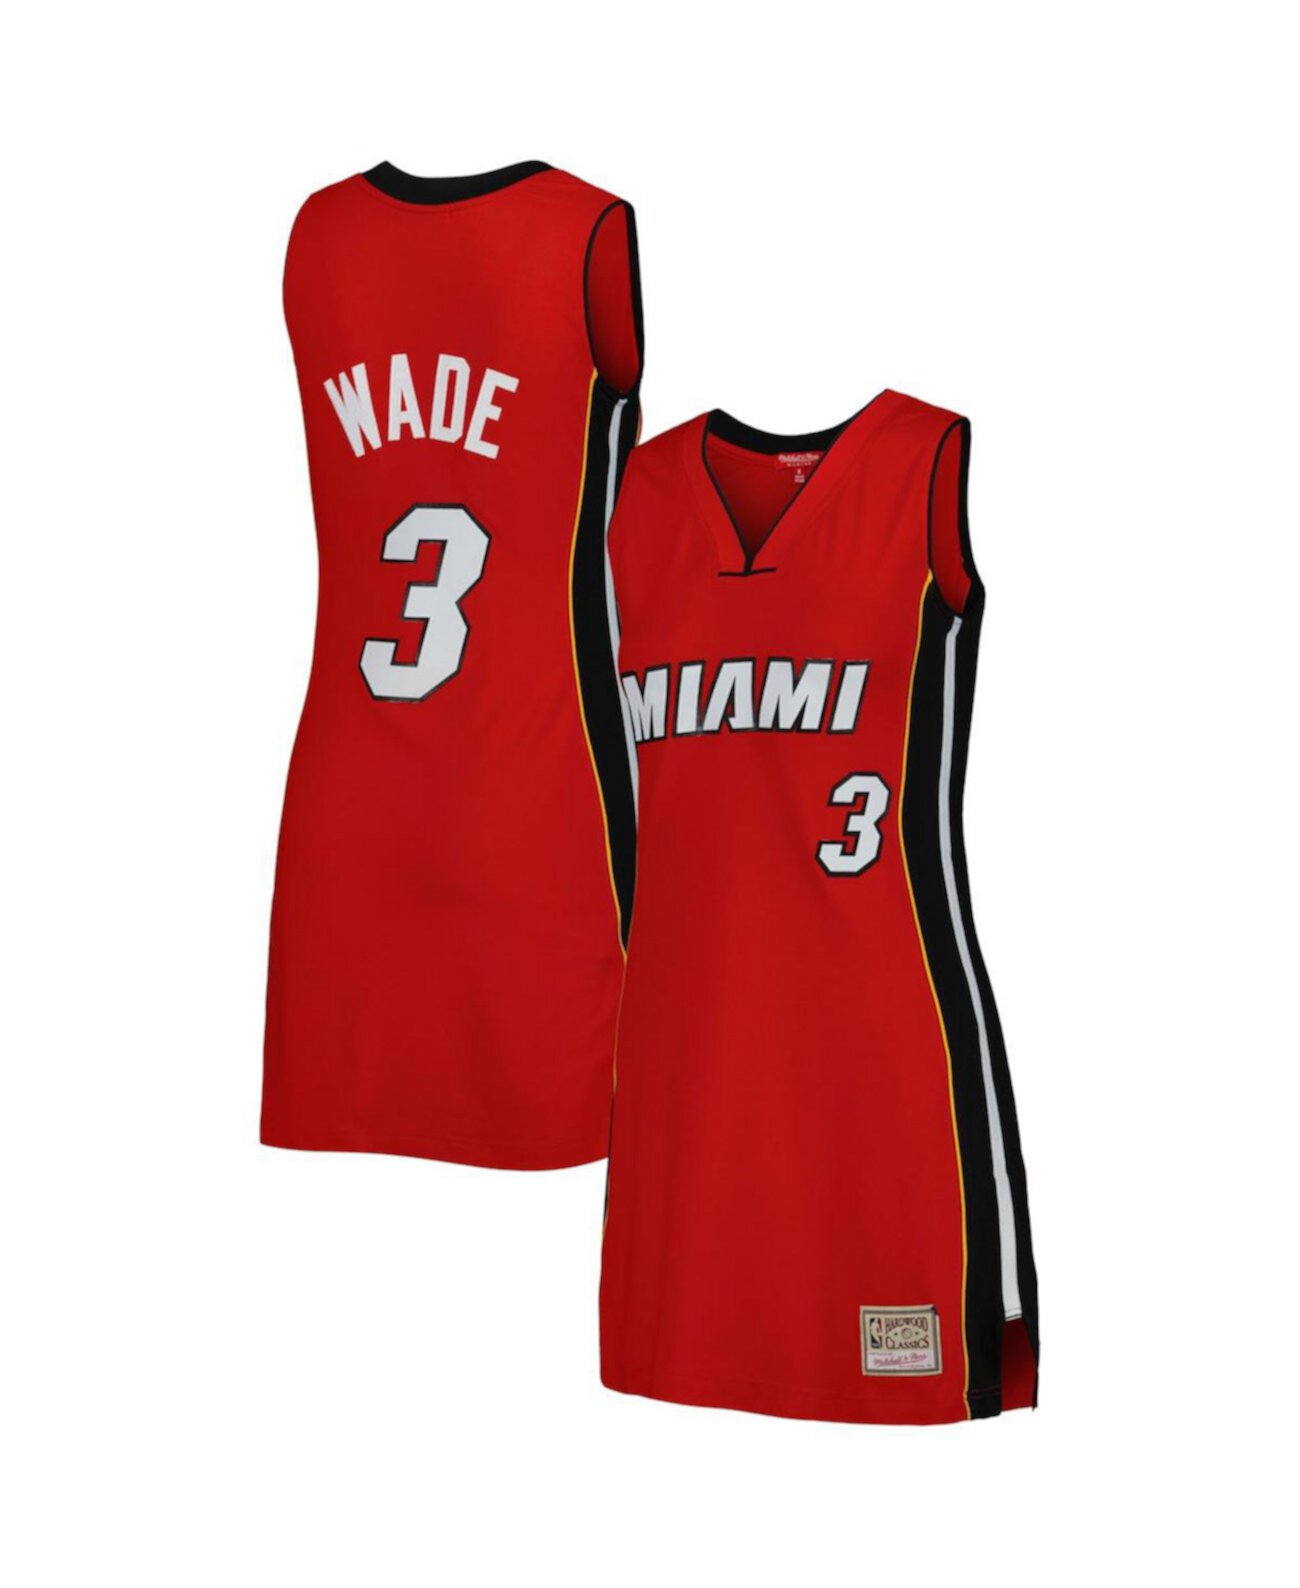 Женское красное трикотажное платье Dwyane Wade Miami Heat 2005 из твердой древесины с именем и номером игрока Mitchell & Ness